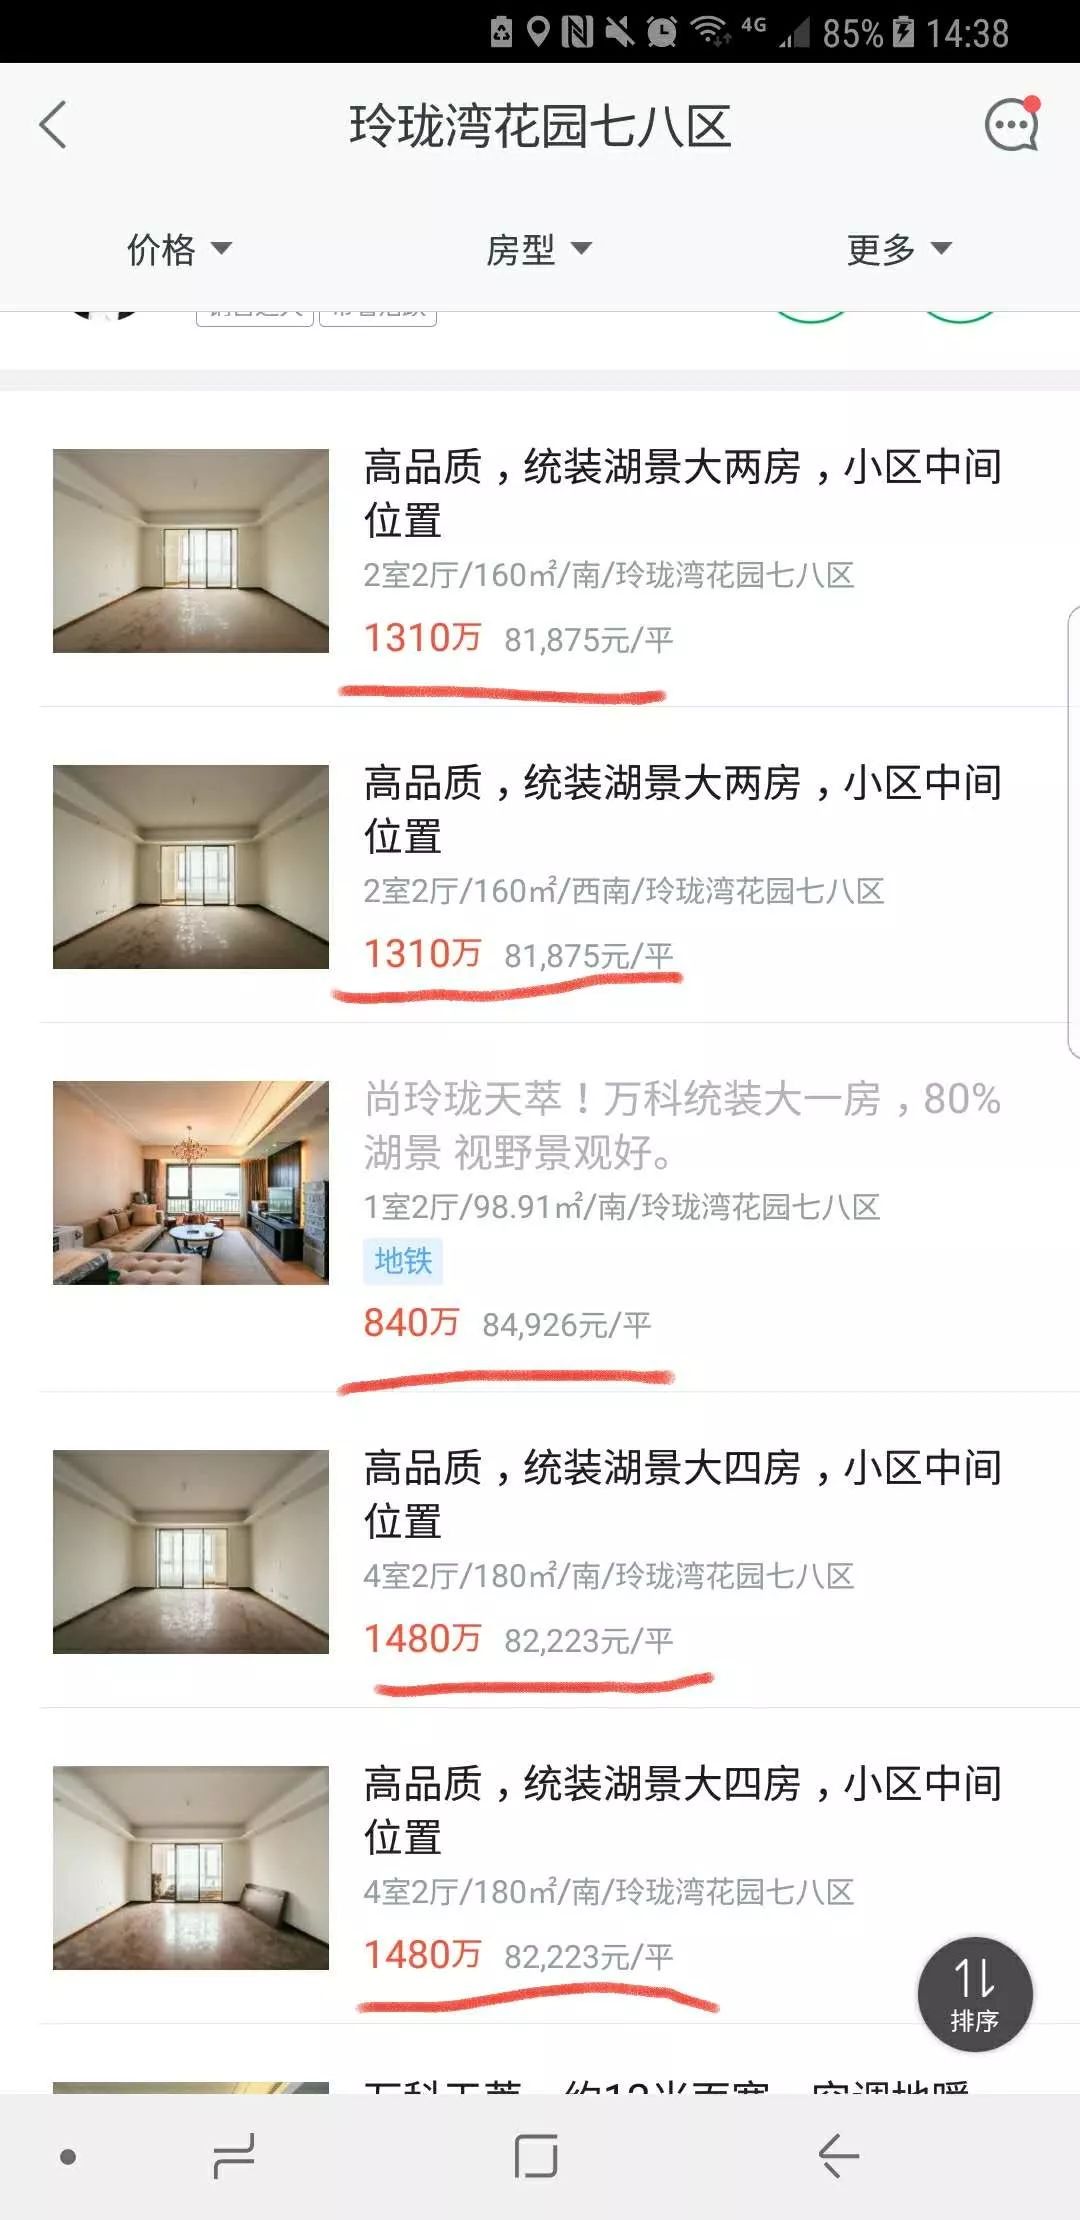 苏州2万房价的房子_苏州房子价位_房价苏州房子会涨吗